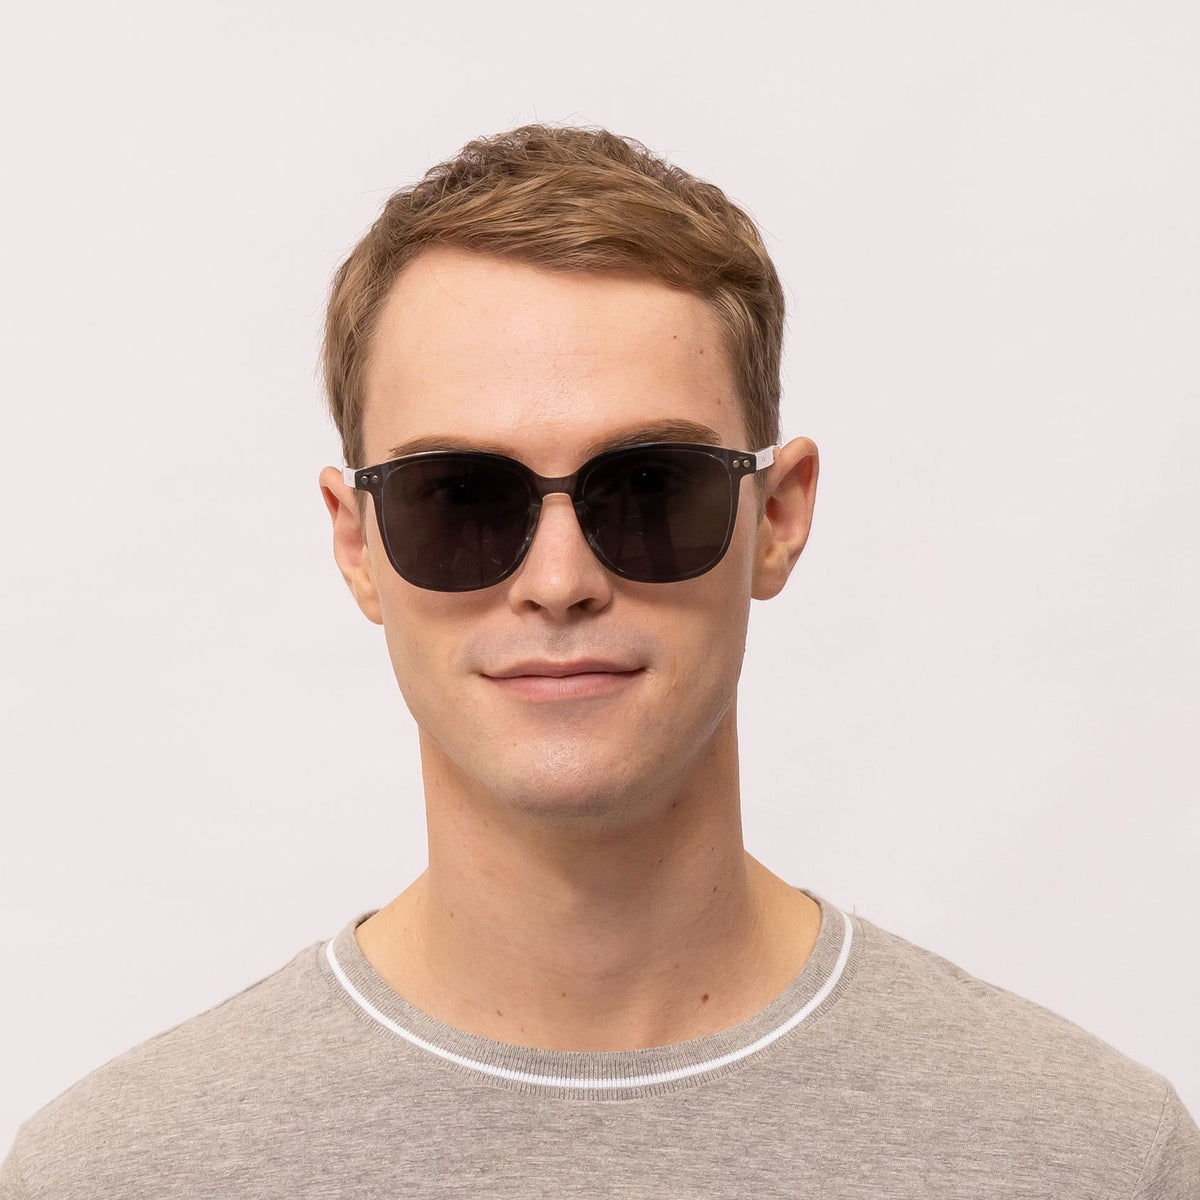 tim square transparent eyeglasses frames for men front view